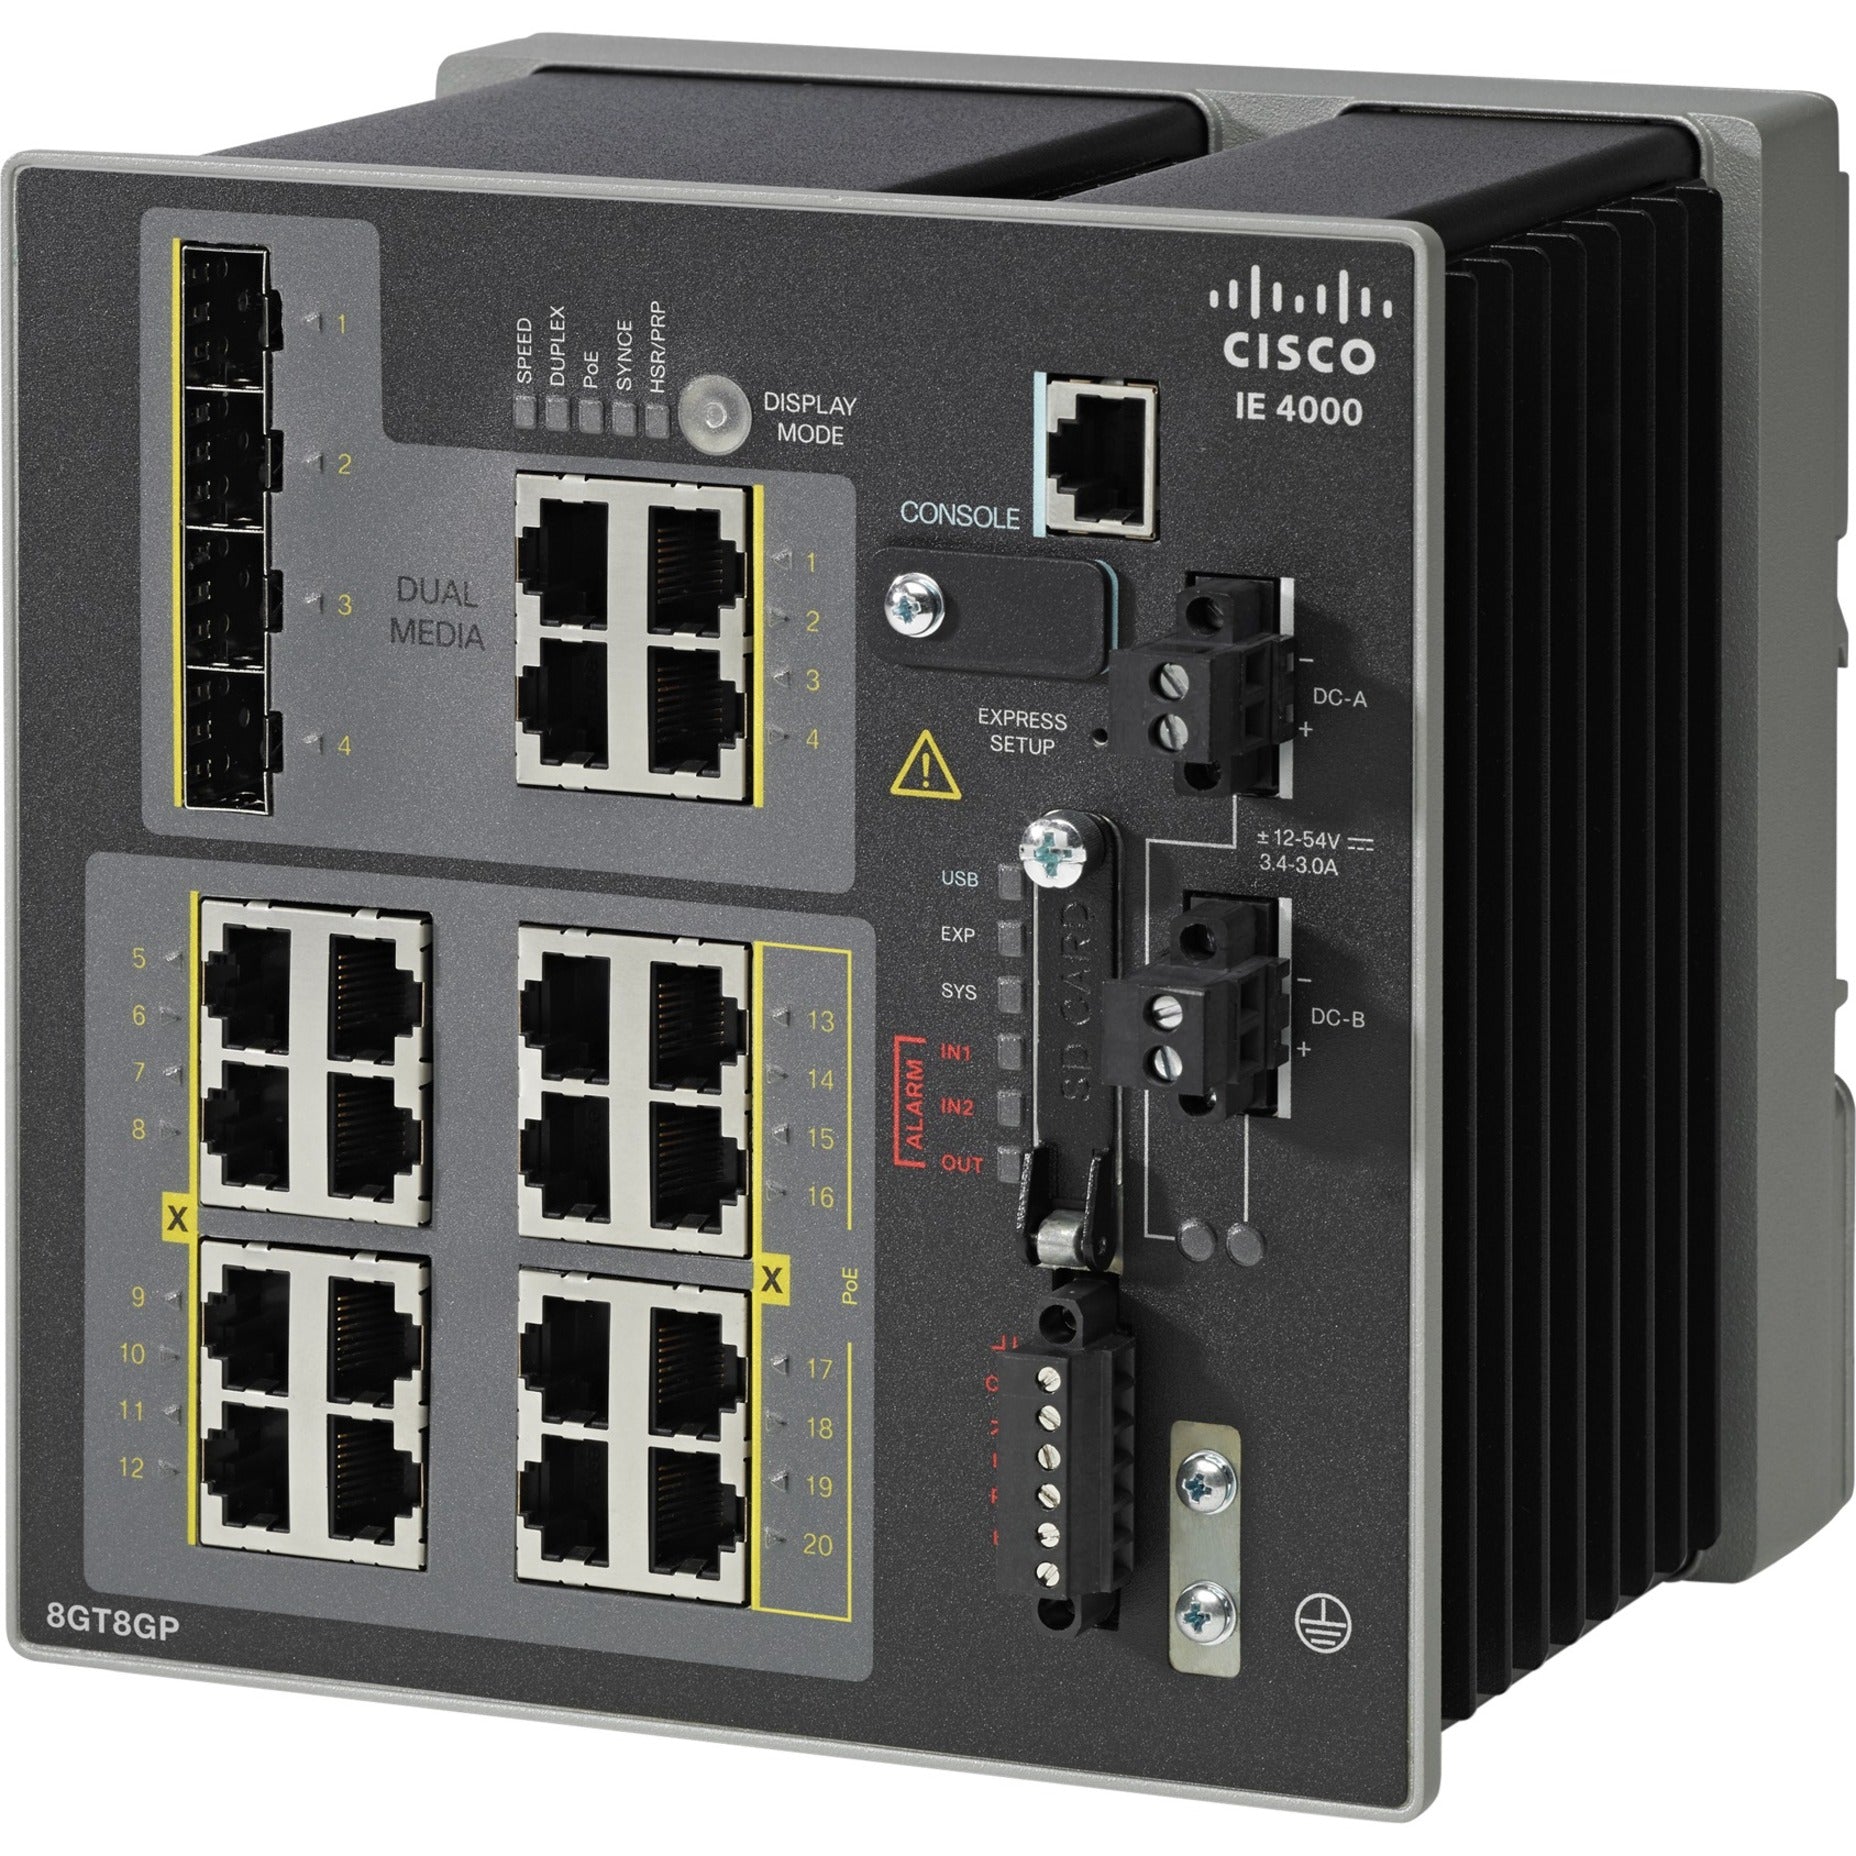 Cisco IE-4000-8GT8GP4G-E Industrial Ethernet Switch 8 x RJ45 10/100/1000 with 8 x 1G DIN Rail Mountable Rack-mountable  Cisco IE-4000-8GT8GP4G-E Commutateur Ethernet industriel 8 x RJ45 10/100/1000 avec 8 x 1G Montable sur rail DIN Montable en rack